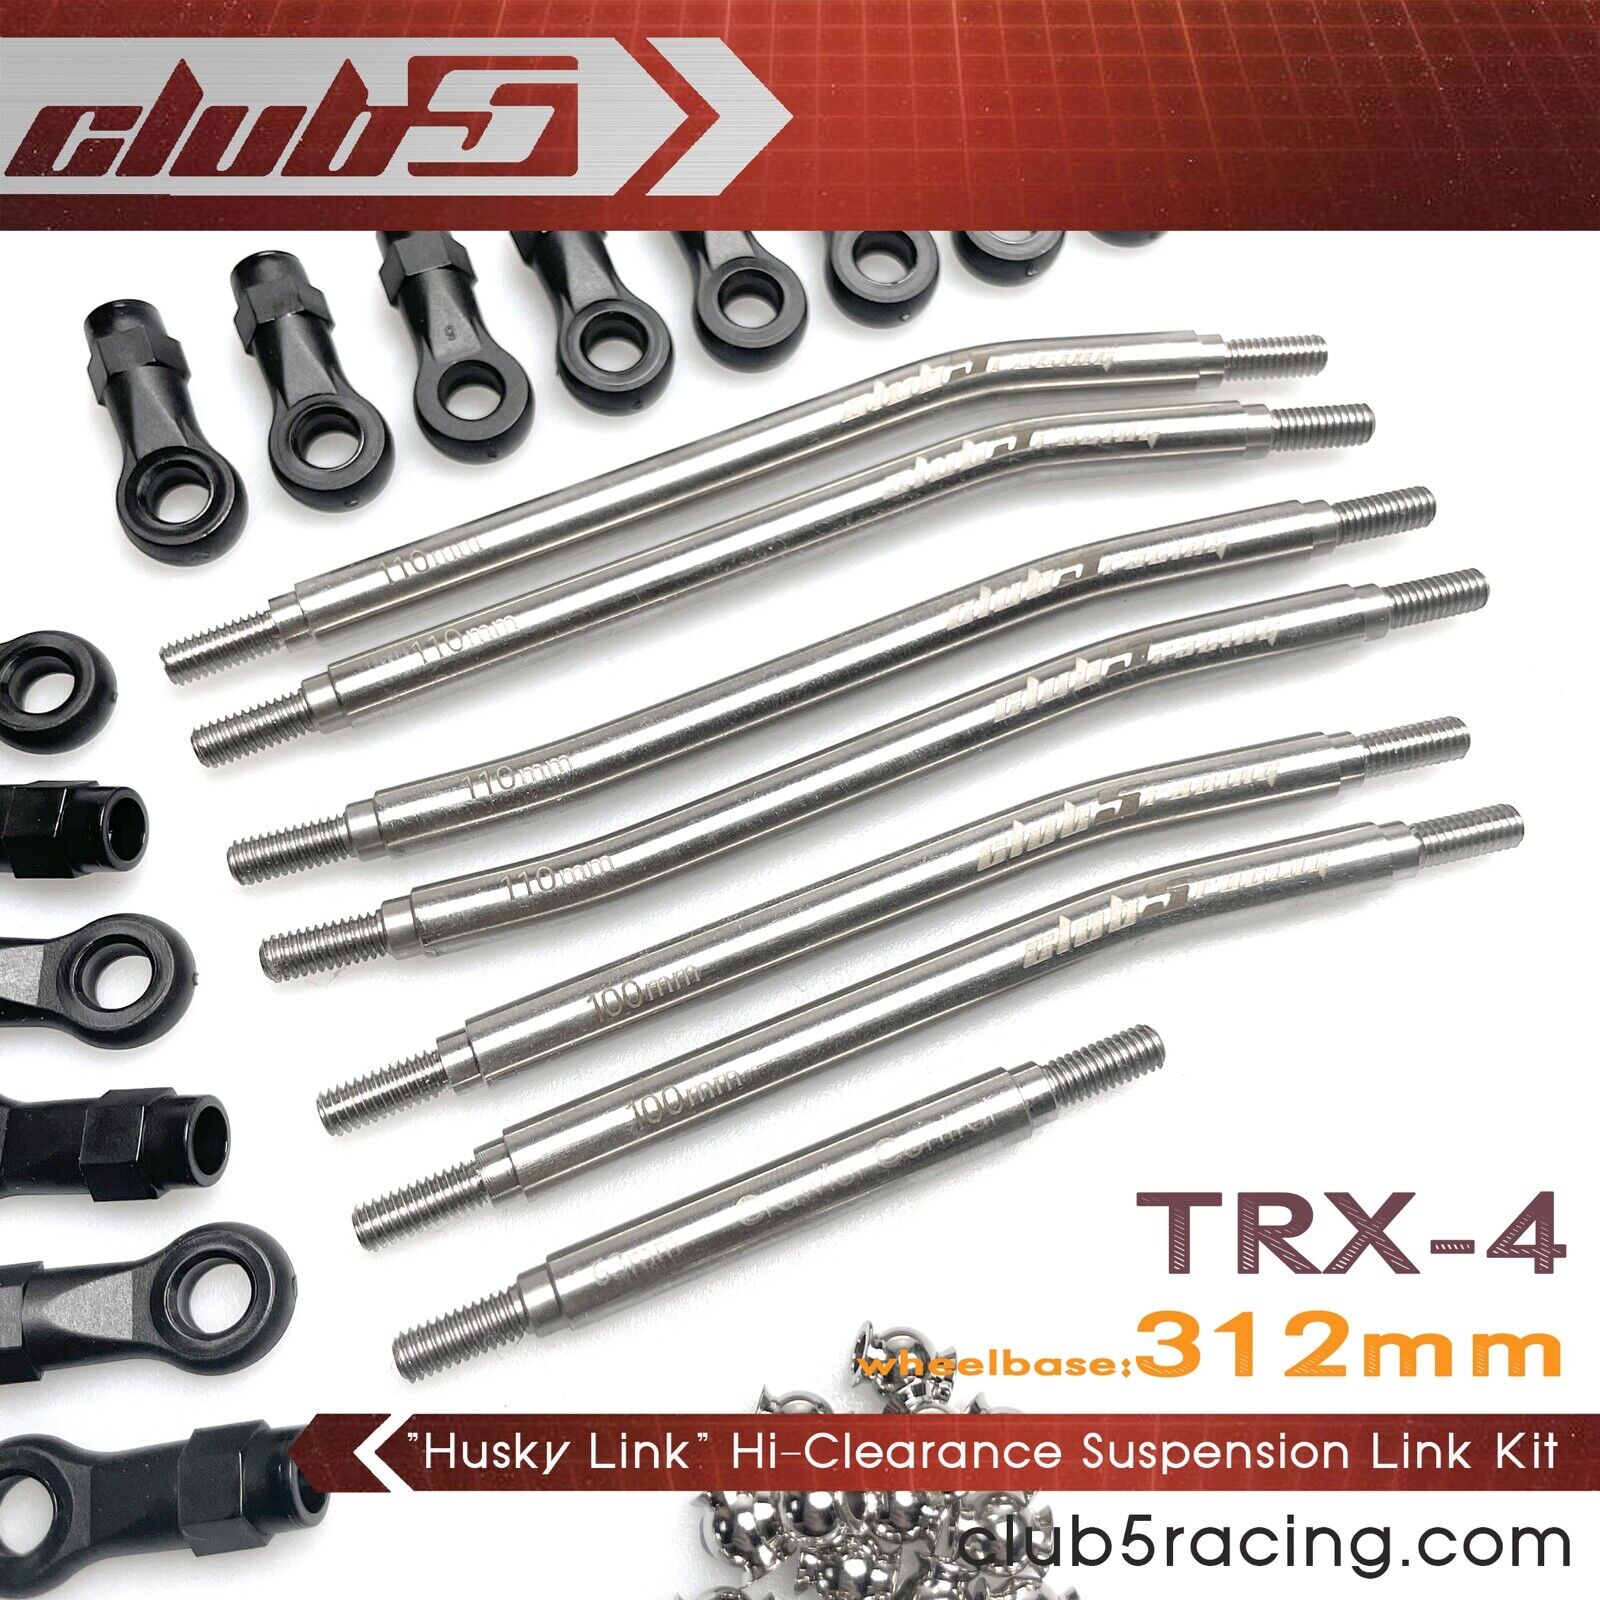 "Husky Link" Hi-Clearance Suspension Link Kit for TRX-4 Bronco / Blazer / Sport